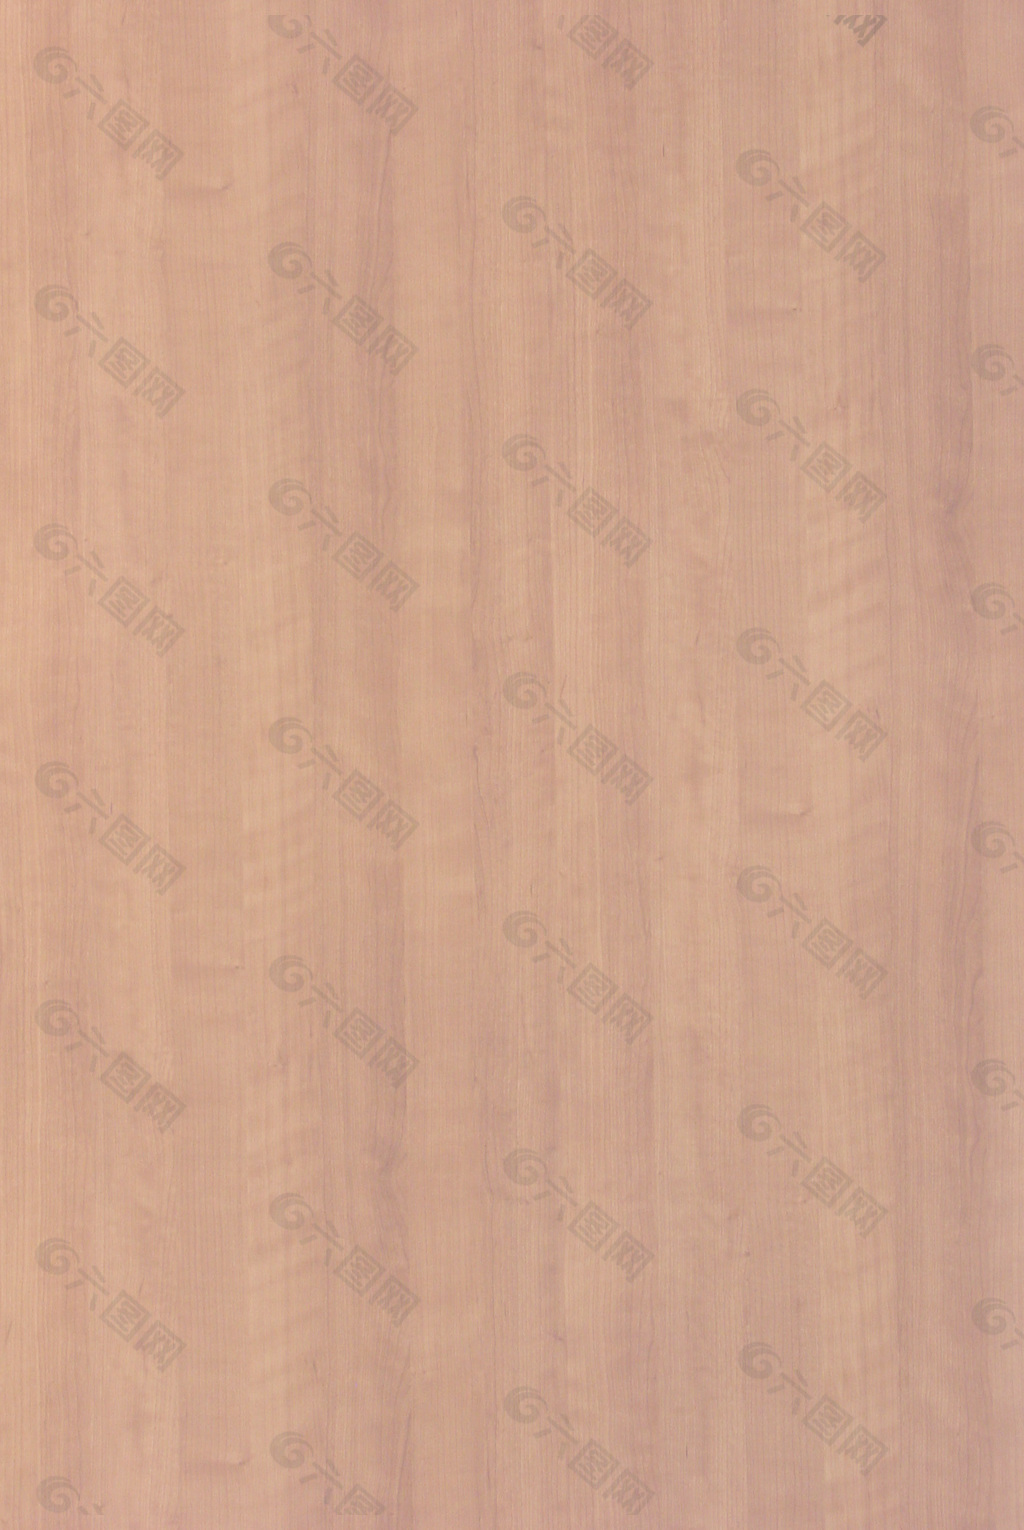 木材木纹木纹素材效果图3d模型 523